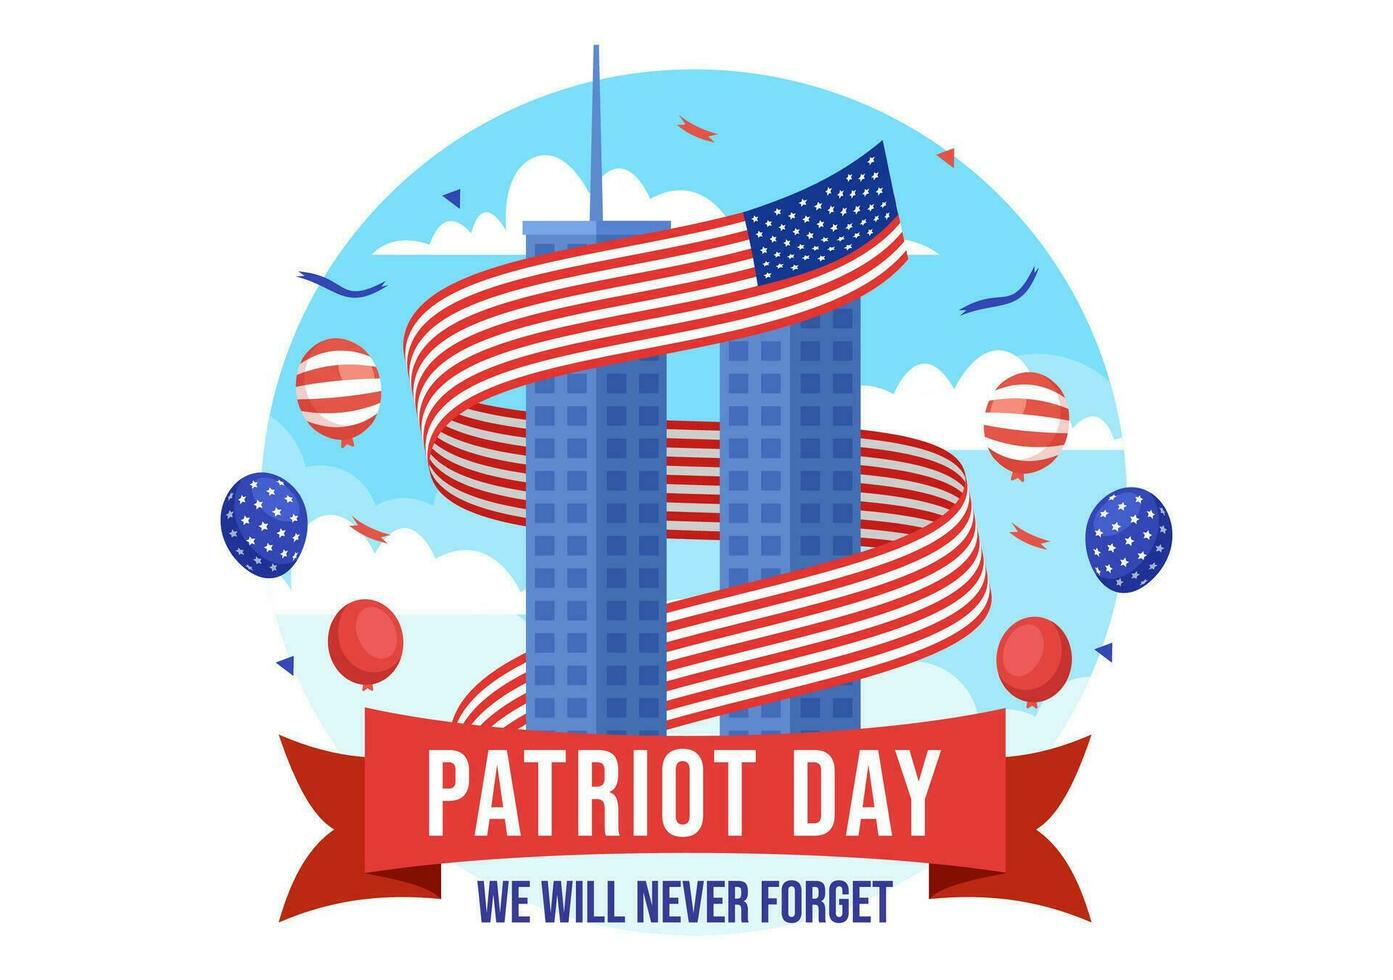 contento Estados Unidos patriota día vector ilustración con unido estados bandera, 911 monumento y nosotros será Nunca olvidar antecedentes diseño mano dibujado plantillas